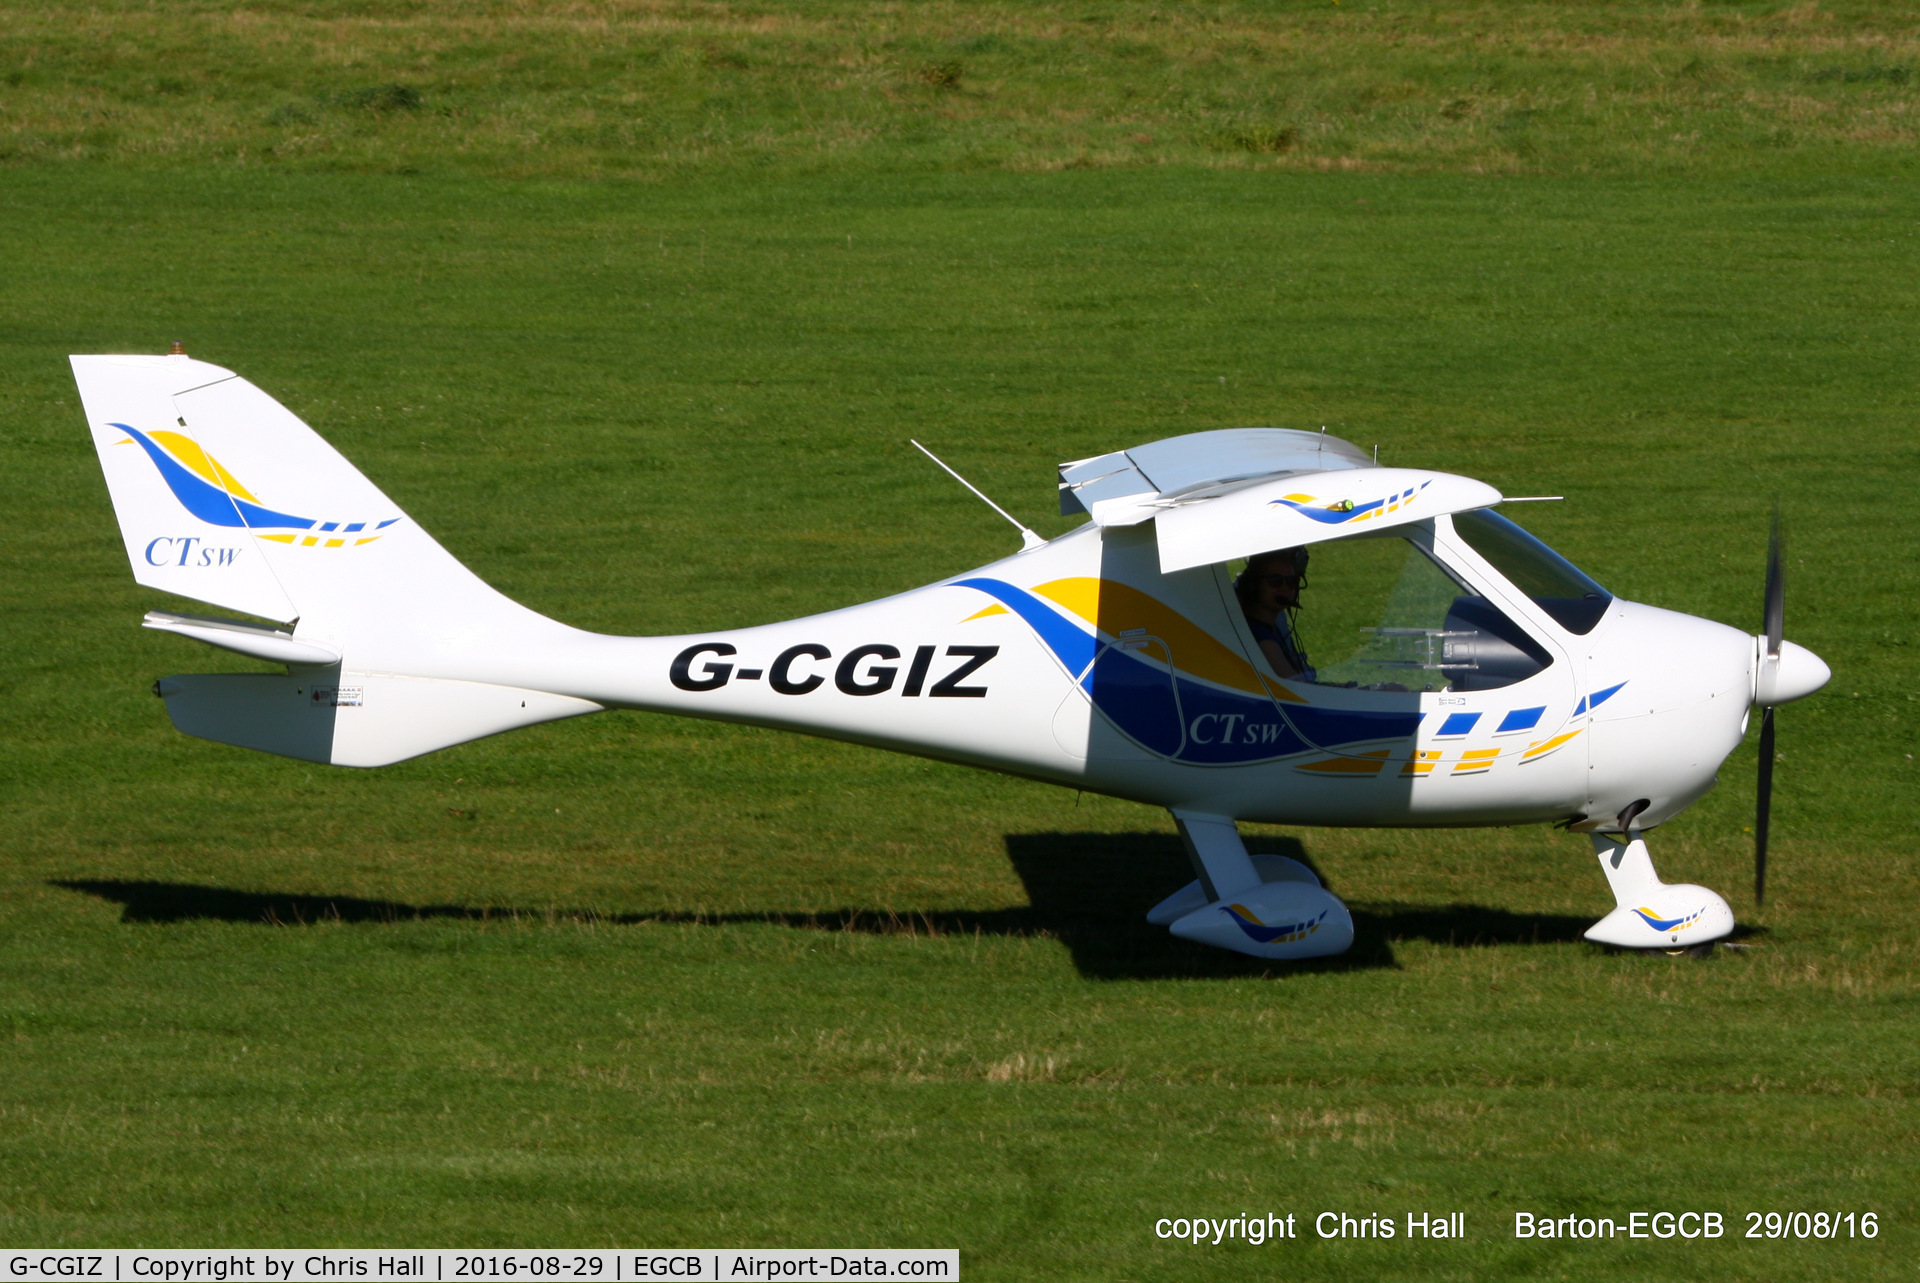 G-CGIZ, 2010 Flight Design CTSW C/N 8512, at Barton